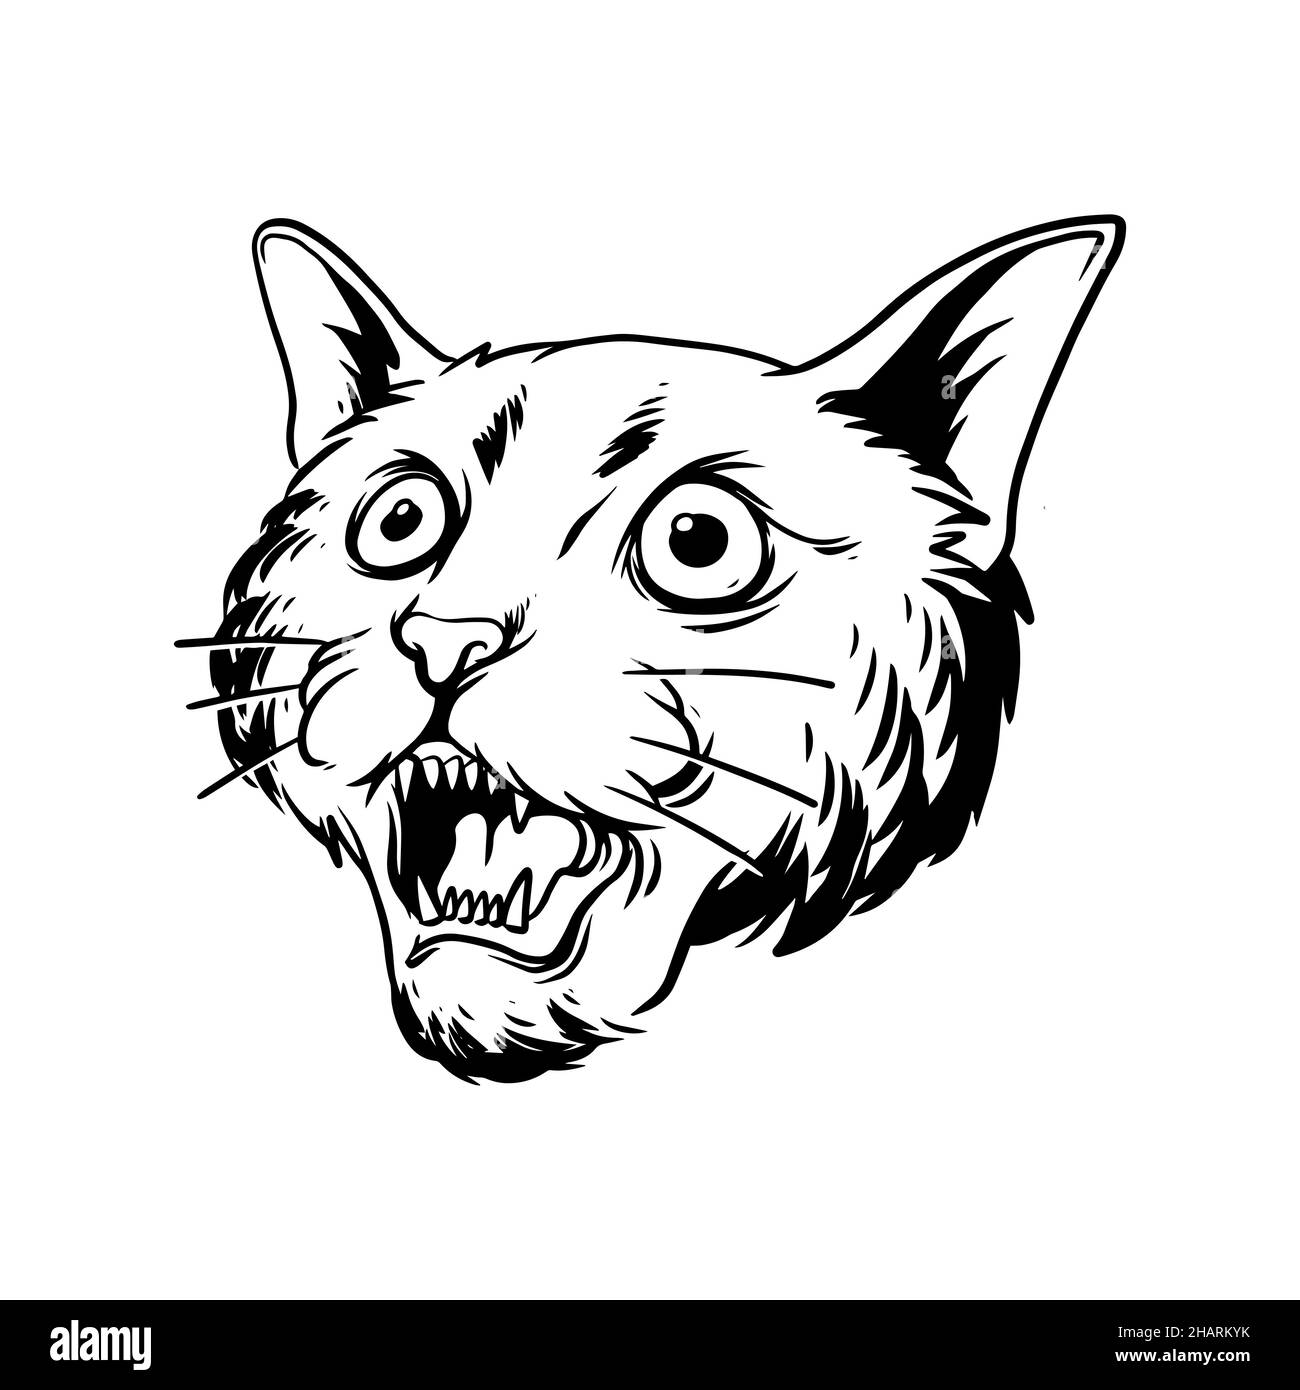 une illustration de chat en colère. une illustration dessinée à la main d'une tête d'animal sauvage. dessin d'art de ligne pour emblème, affiche, autocollant, tatouage, etc Banque D'Images